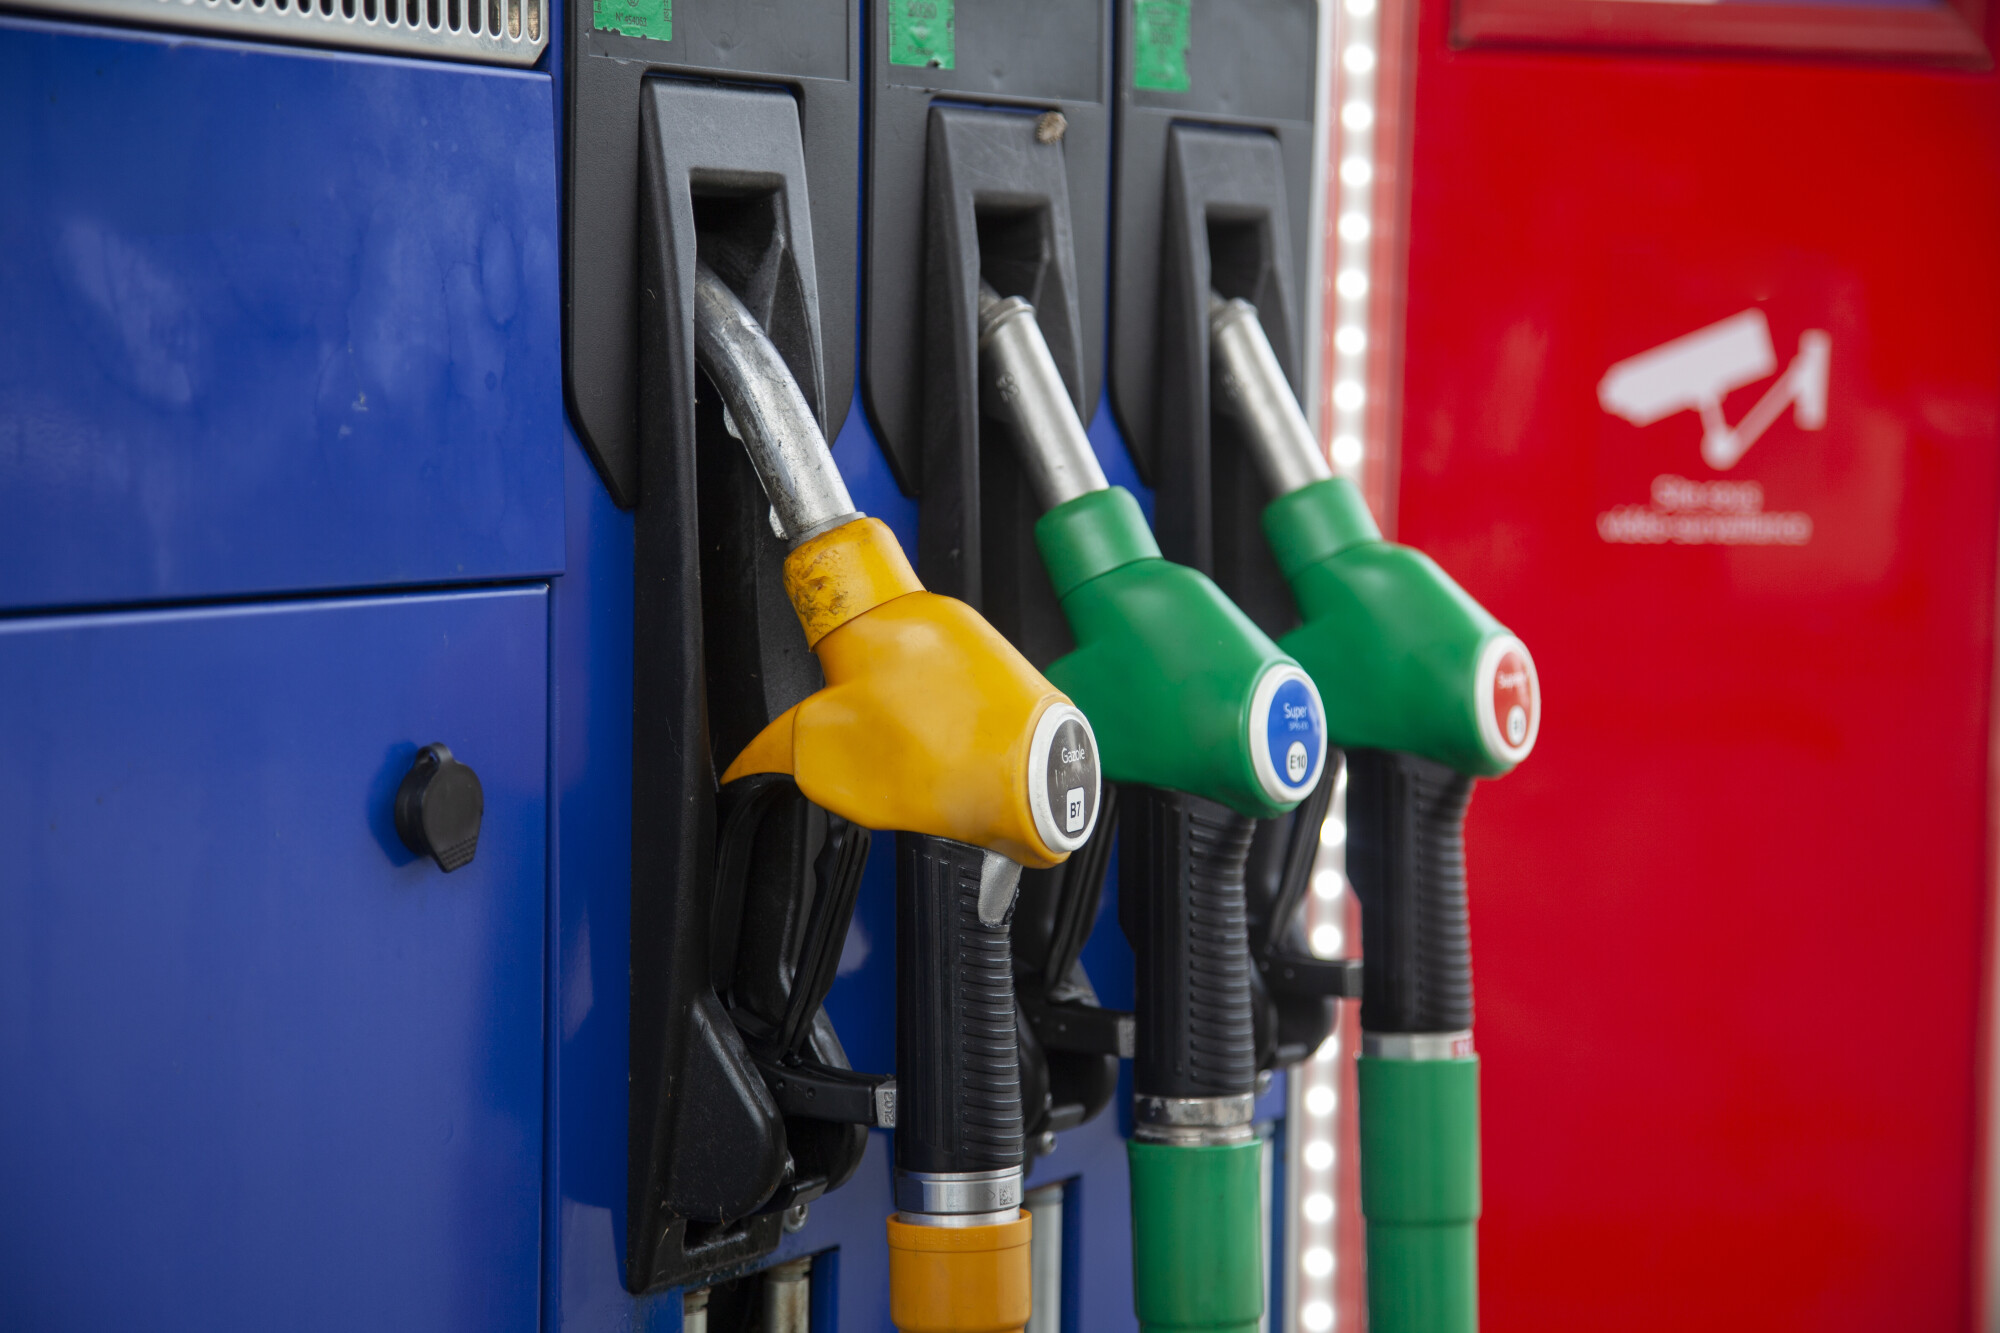 Pouvoir d’achat: payez votre carburant moins cher!